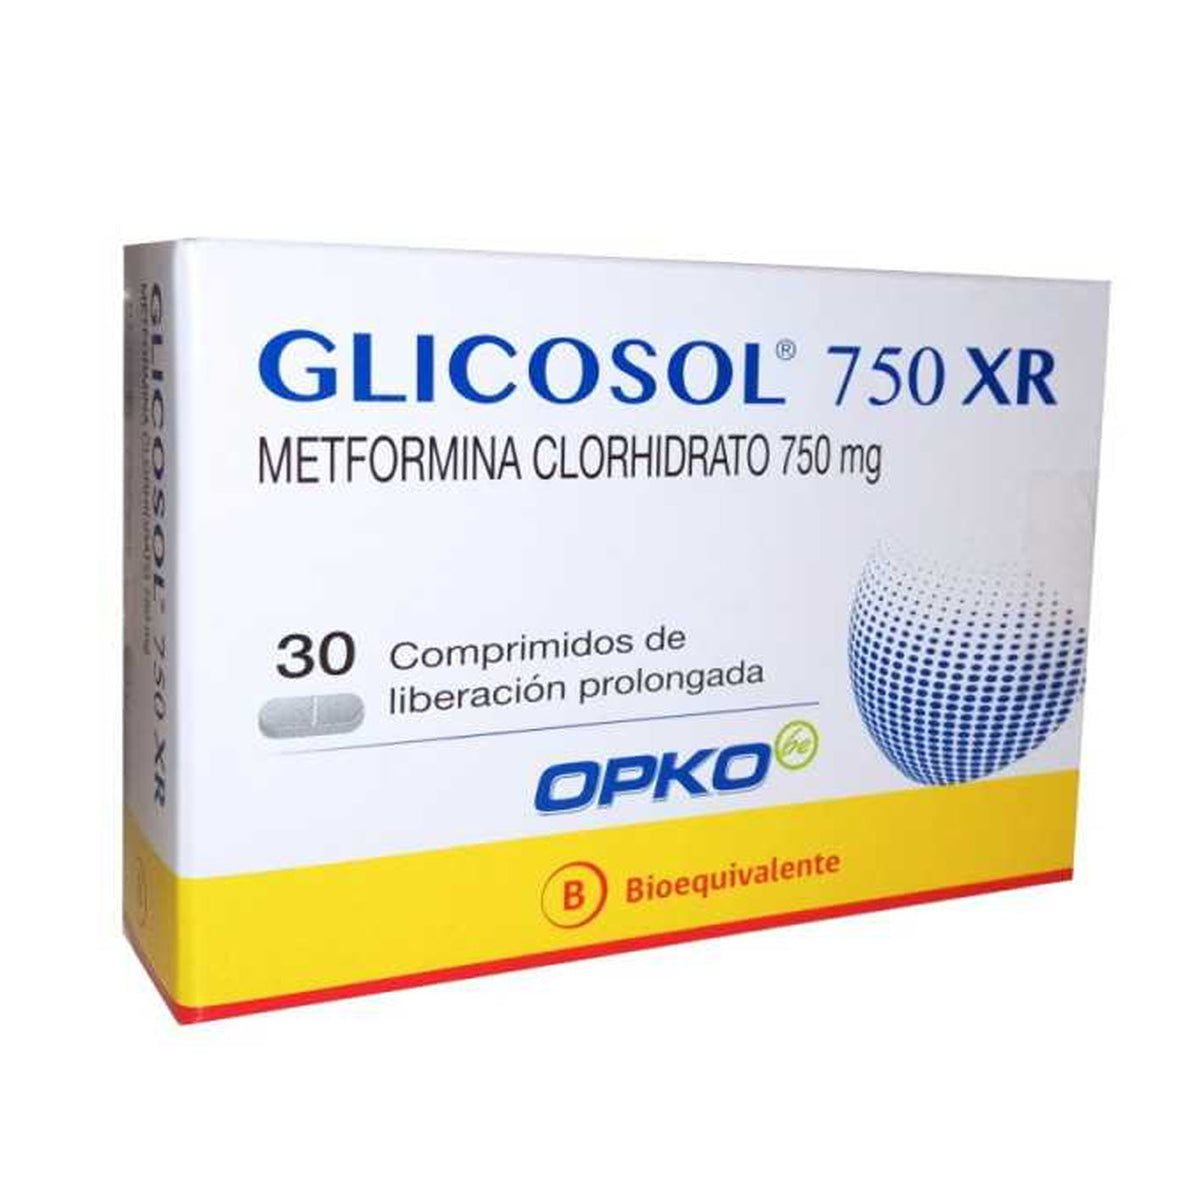 Glicosol XR Comprimidos Recubiertos de Liberación Prolongada 750mg